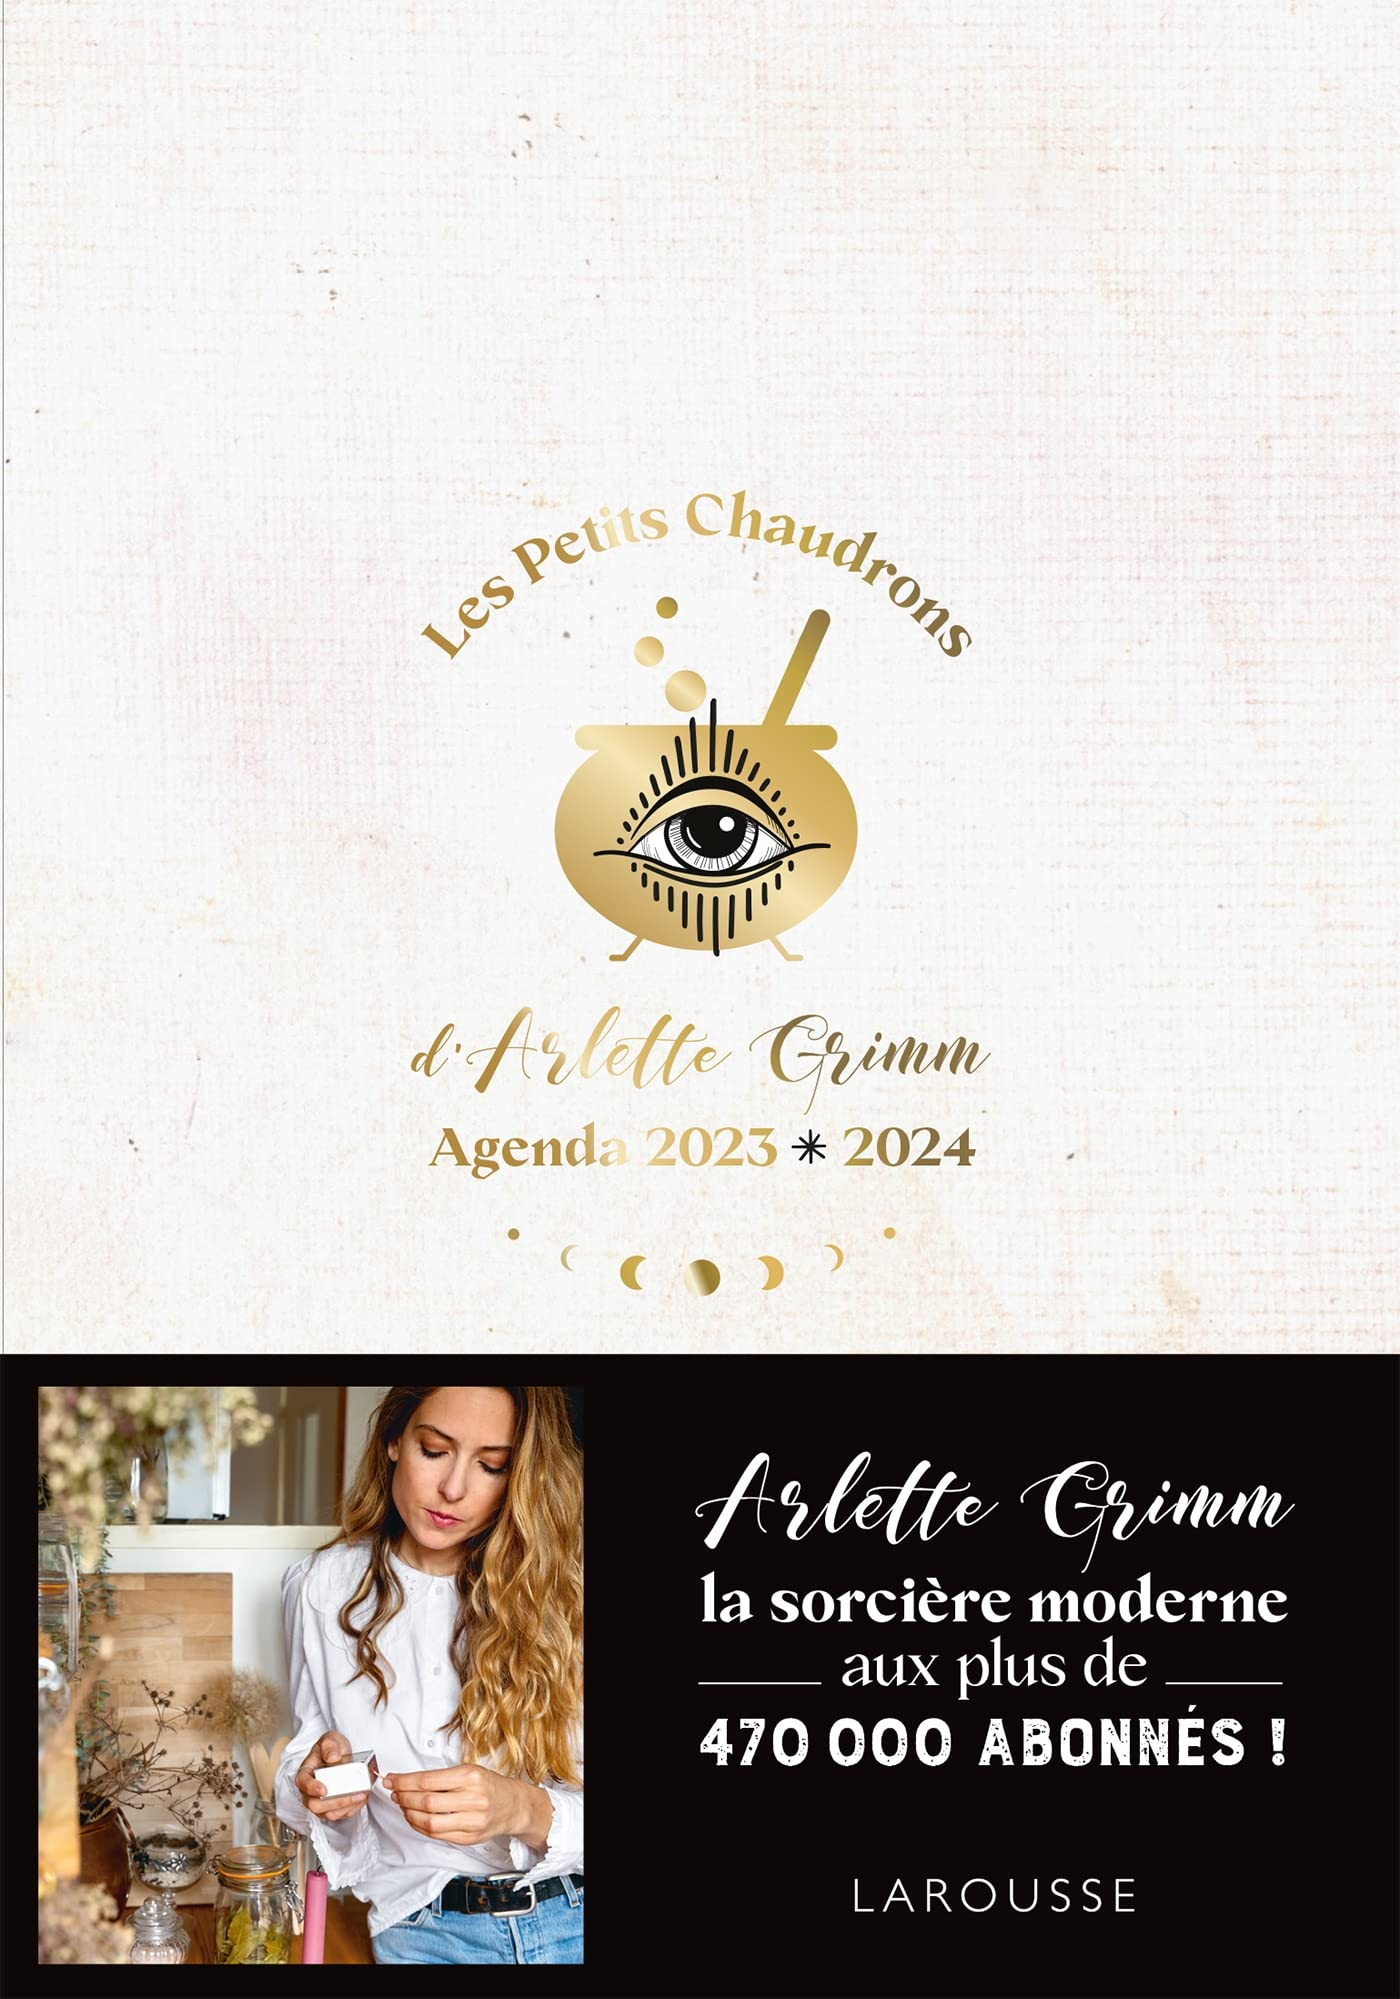 Les petits chaudrons d'Arlette Grimm : Agenda 2023-2024